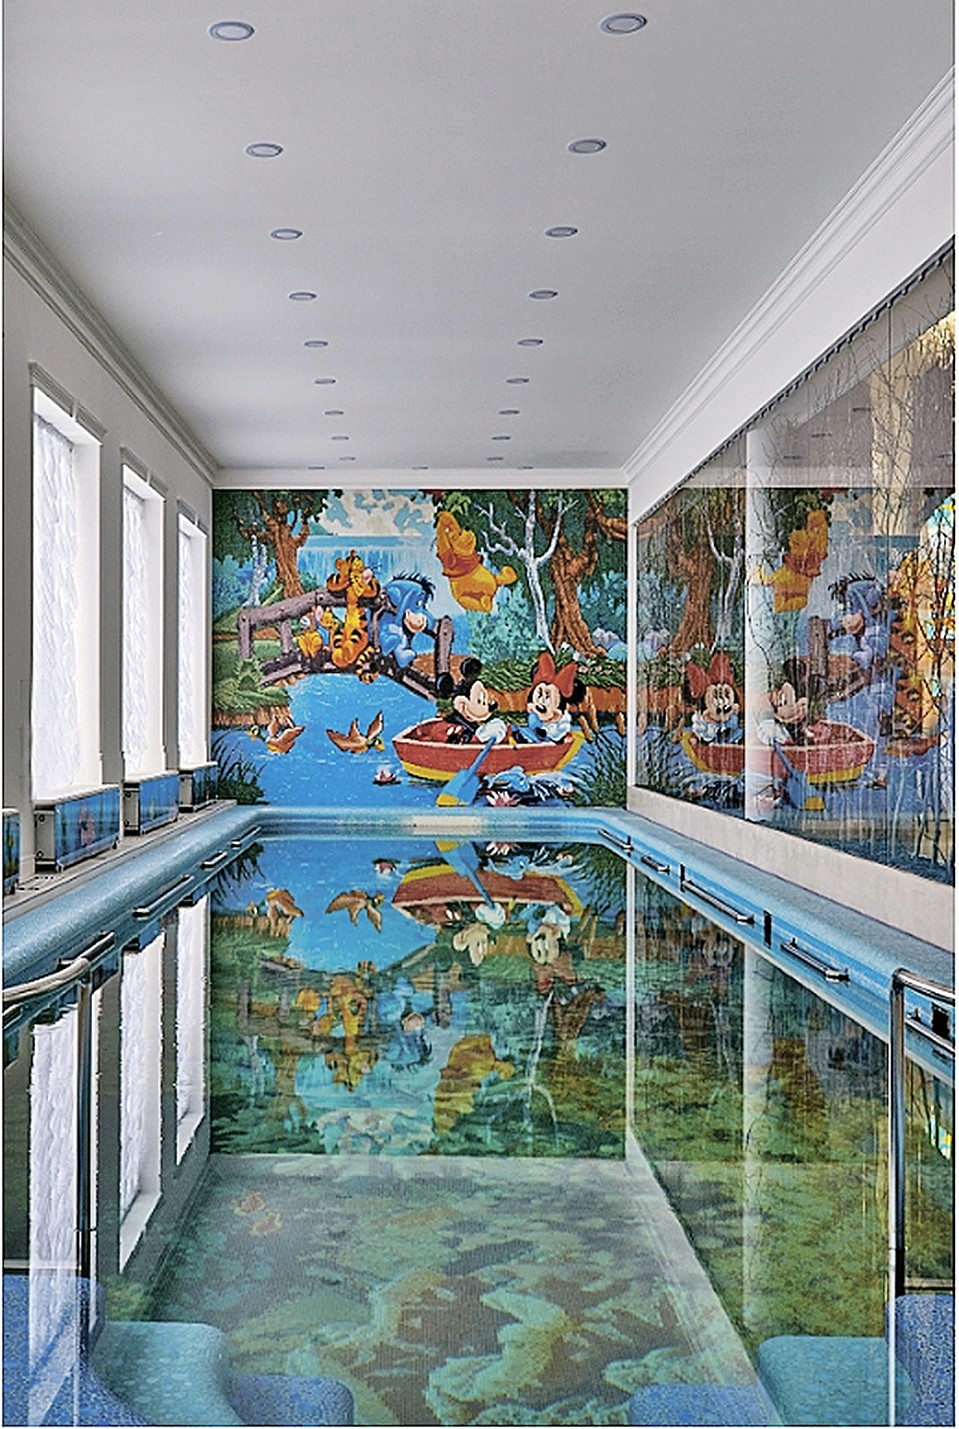 В пристройке есть глубокий бассейн - два метра. Артист подумывает уменьшить глубину купальни, чтобы детям было комфортнее. Фото: karpov-buro.ru 